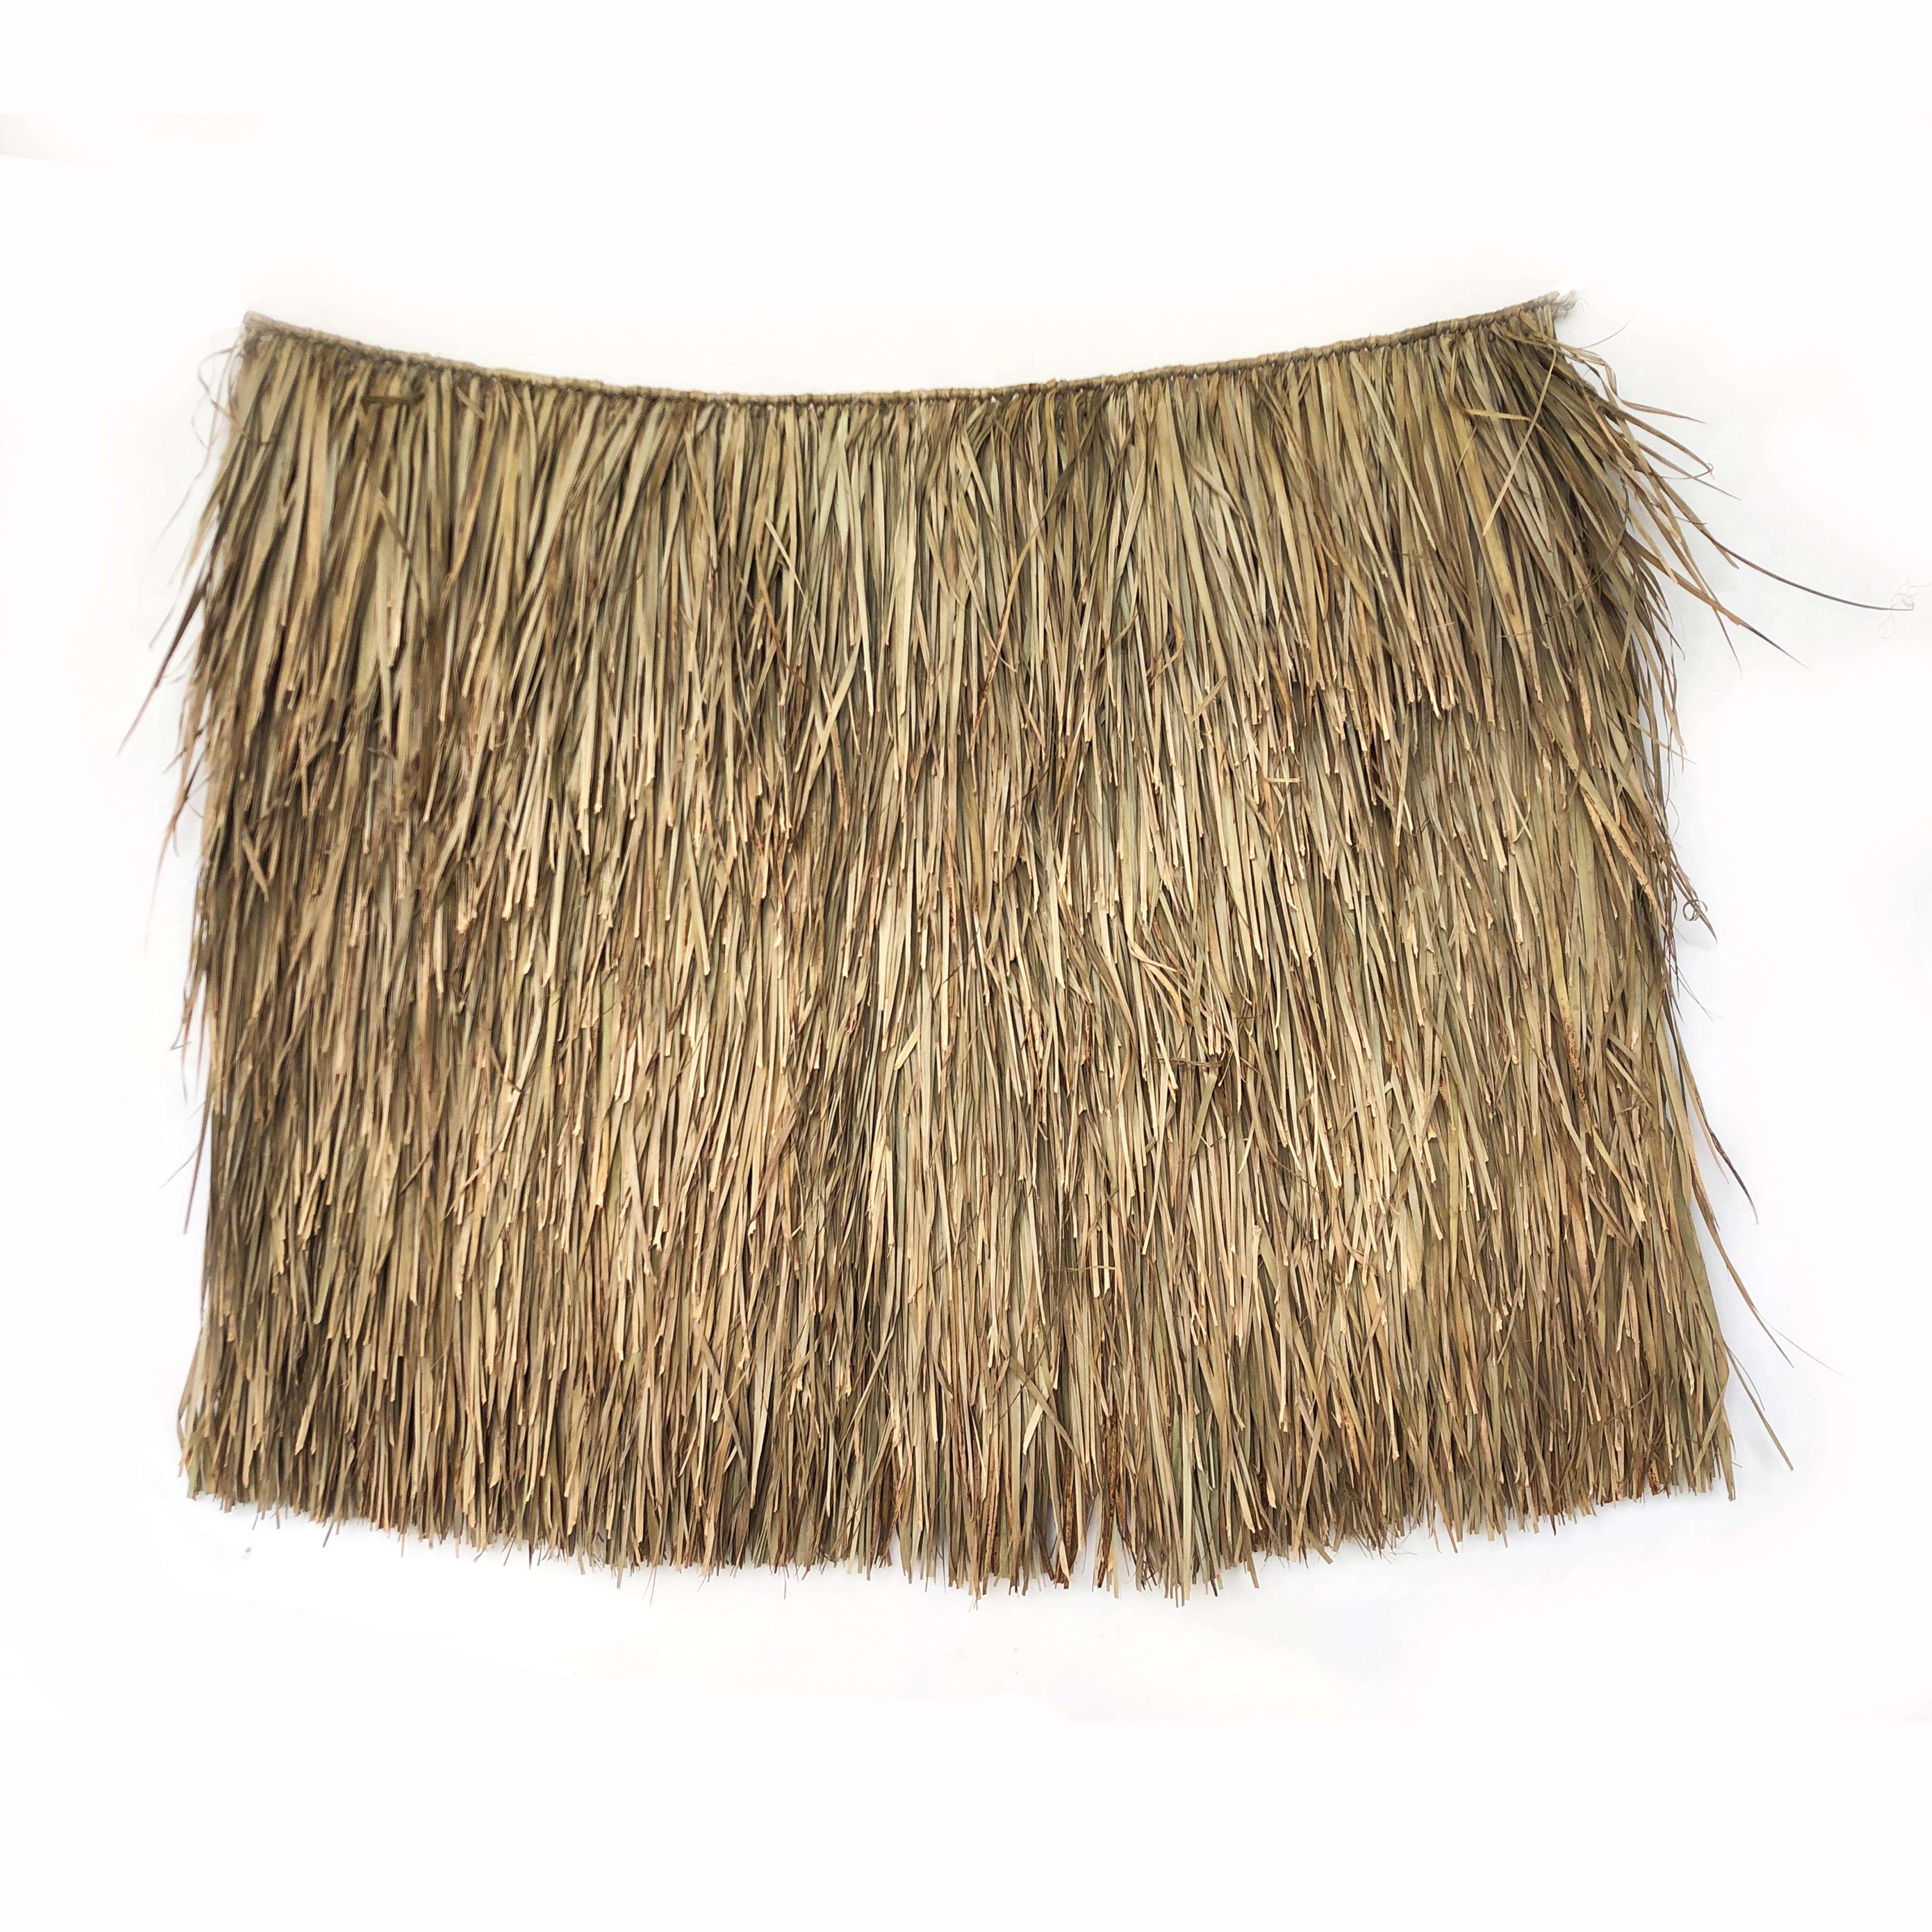 Imperméable en feuilles de palmier tressées, rare à trouver. D'origine préhispanique, c'est un vêtement tissé qui protège de la pluie. Également connu sous le nom de Capisayo ou Capote dans d'autres régions du sud du Mexique.
Parfait pour la